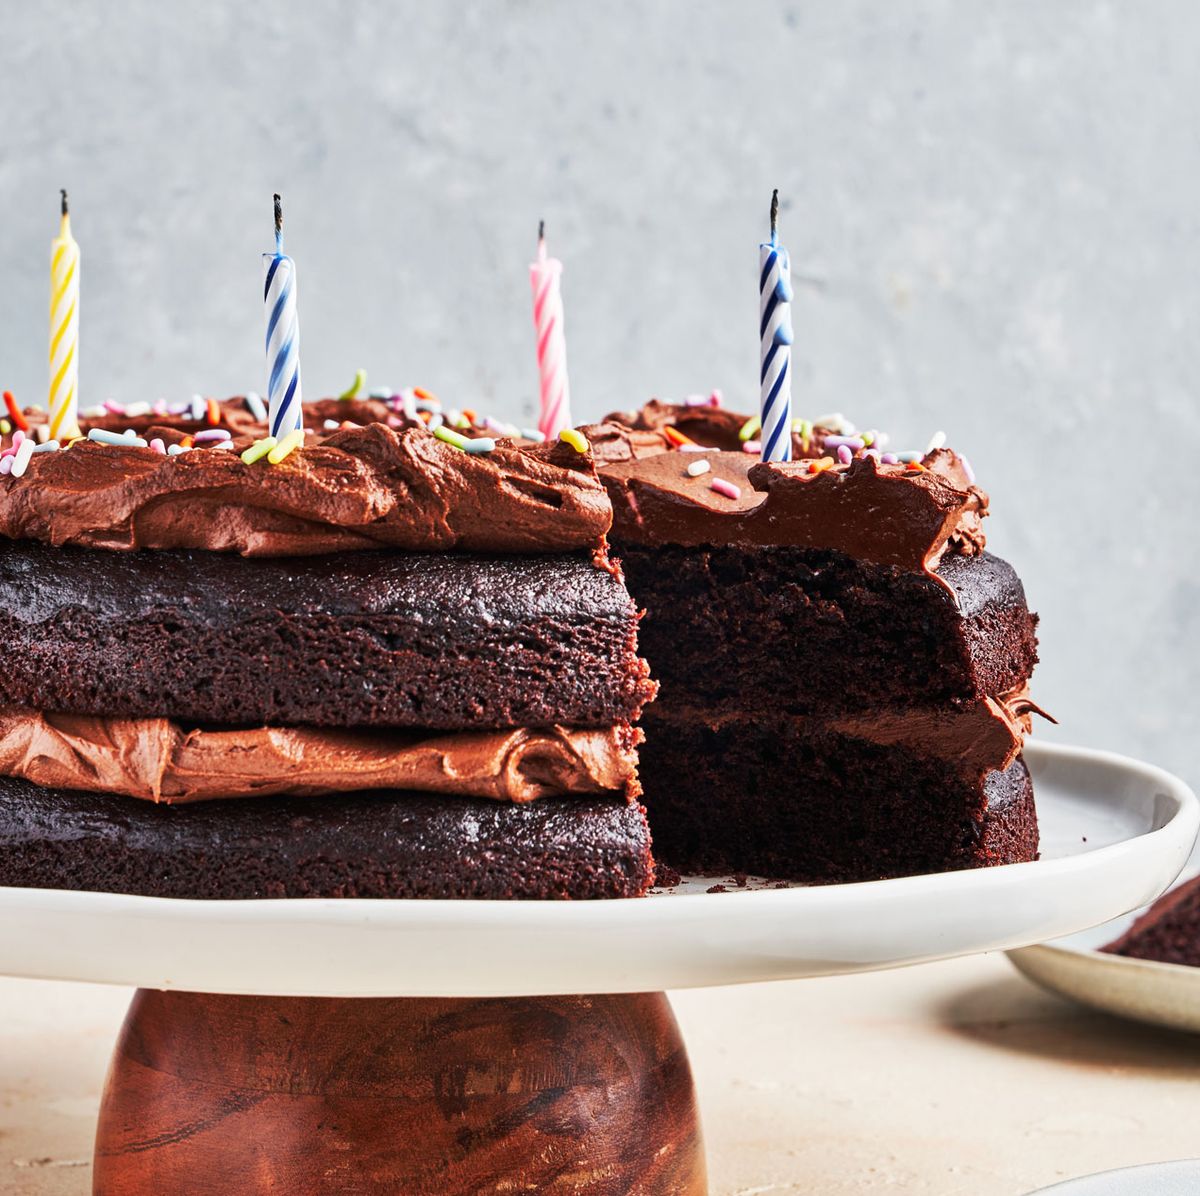 Receta fácil de tarta de chocolate - Hornea tu propia tarta de cumpleaños